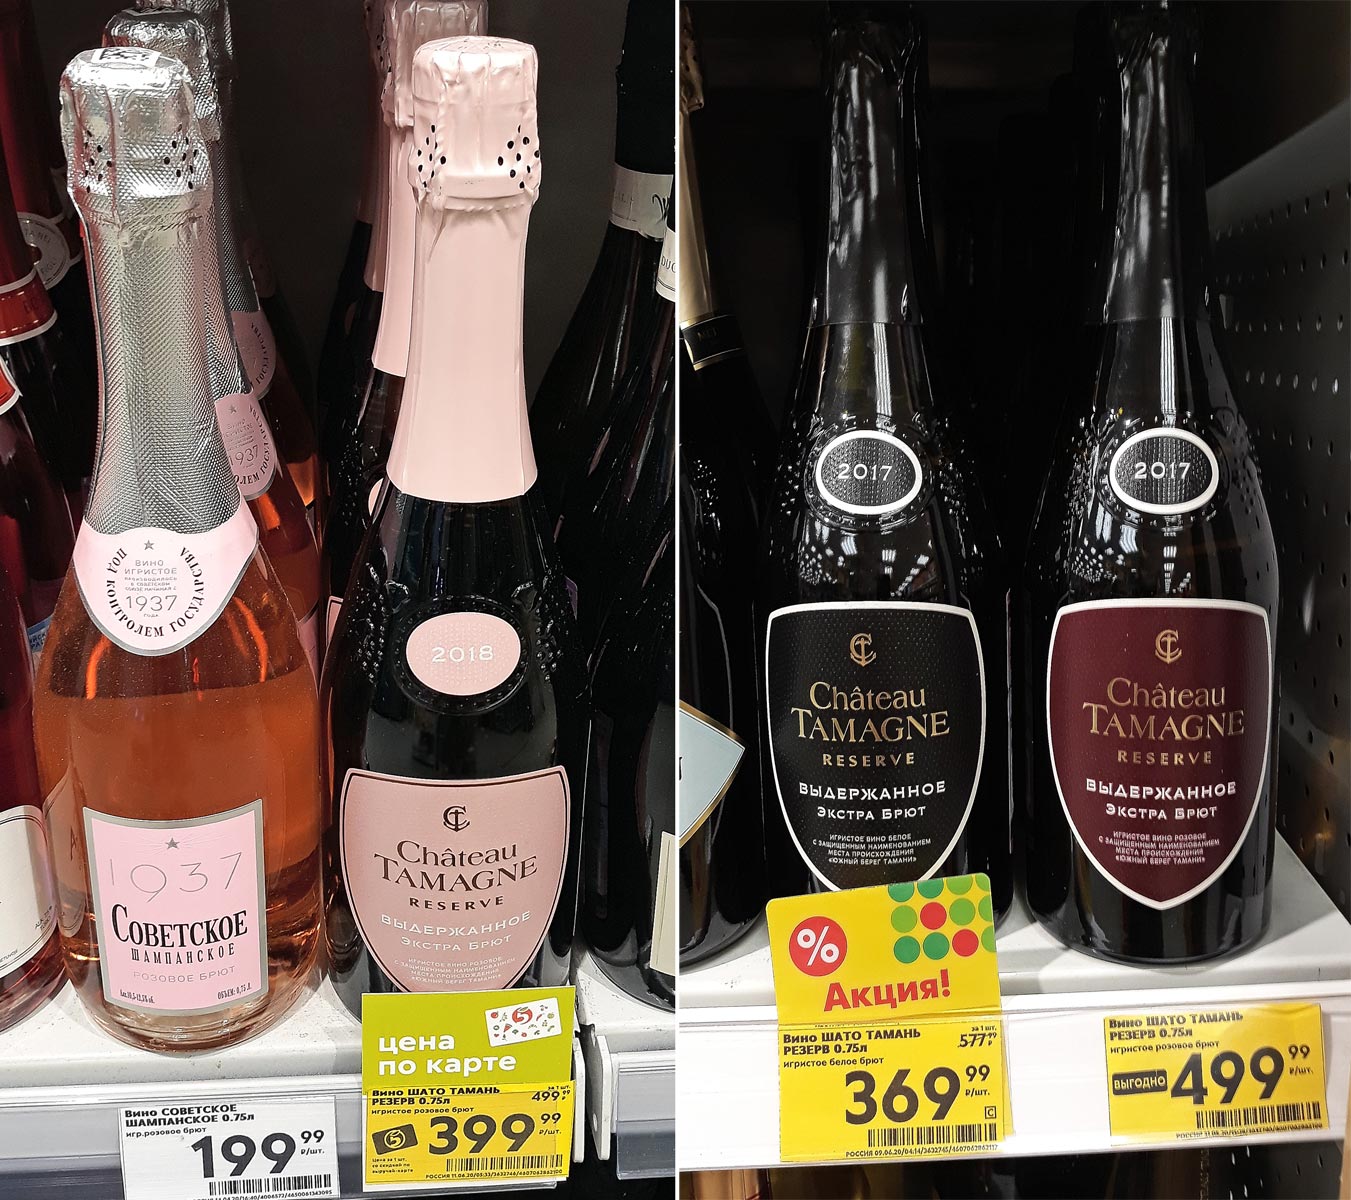 Купить шампанское в нижнем. Шато Тамань шампанское брют. Chateau Tamagne шампанское Шато Тамань. Шато Тамань шампанское брют розовое резерва. Шампанское Тамань брют розовое.